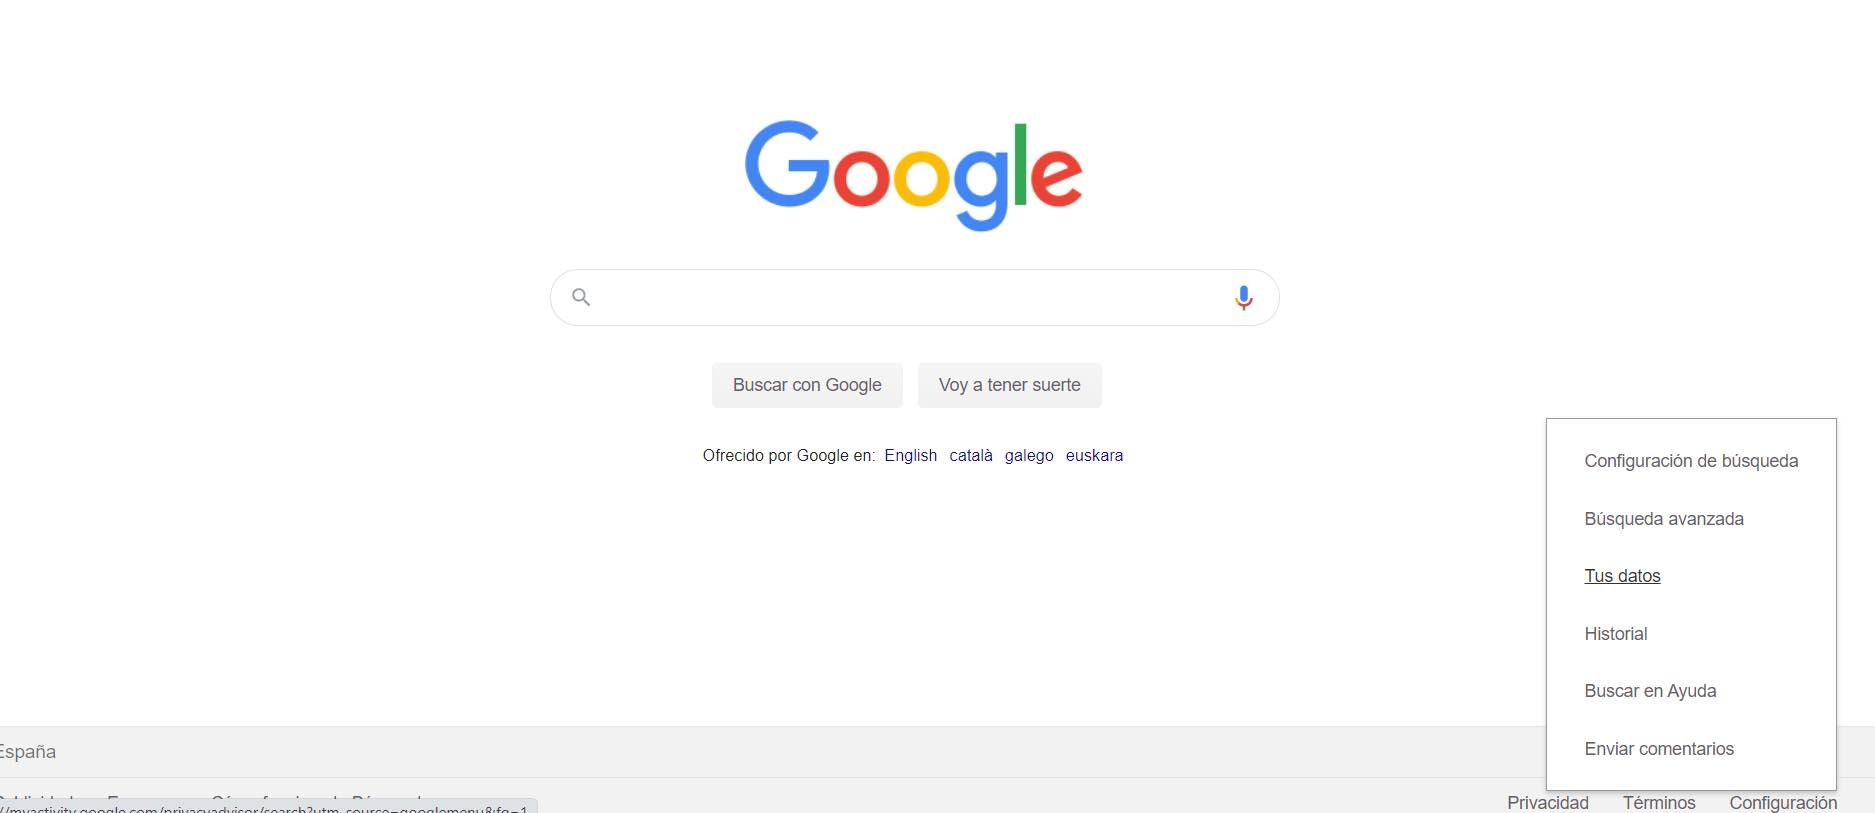 Buscar en Google con seguridad